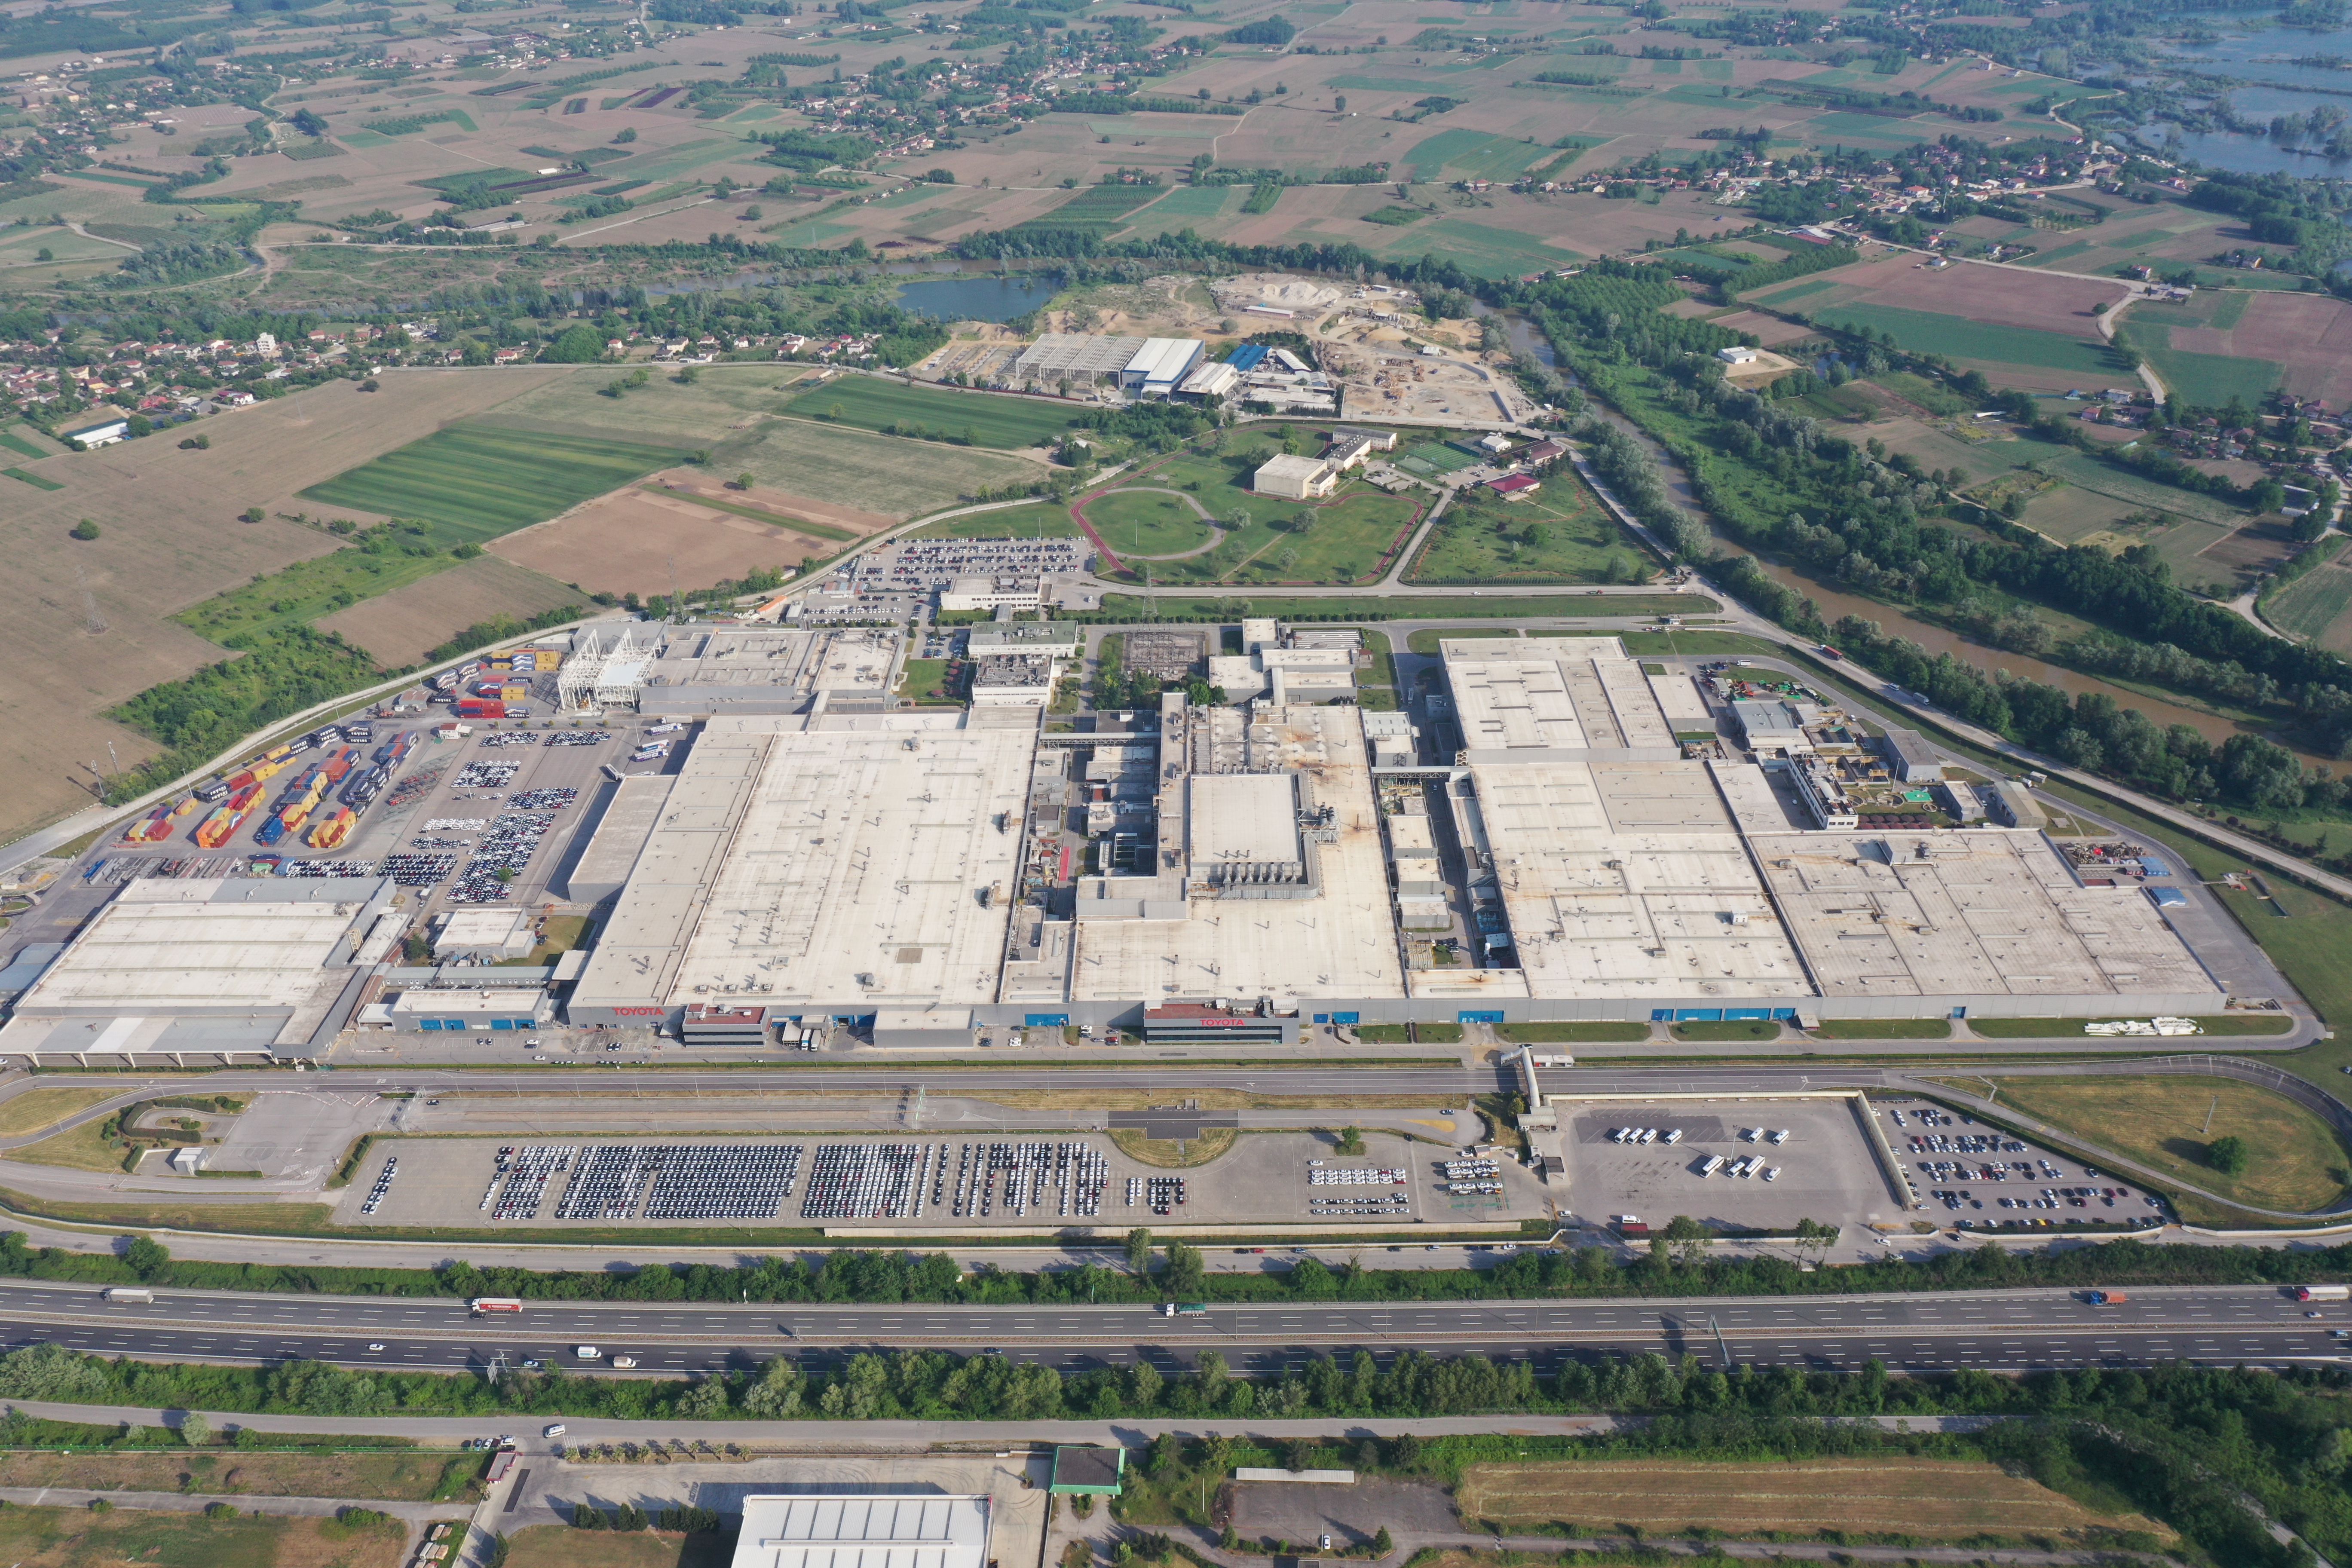 Toyota Otomotiv Sanayi Türkiye, Geleceğe Hazırlık İçin Üretime Kısa Bir Mola Veriyor